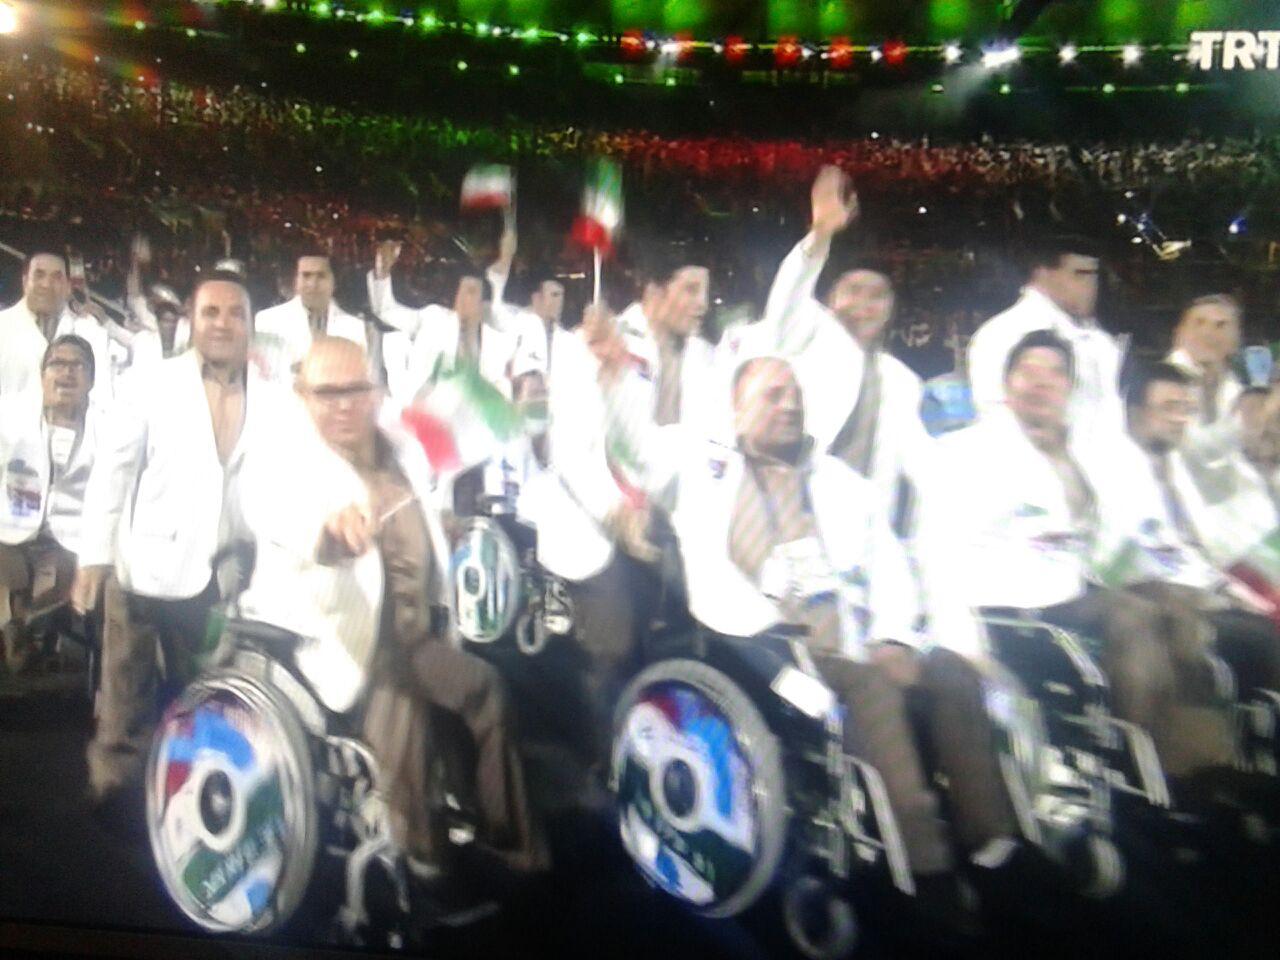 رژه کاروان ايران در مراسم افتتاحيه/ بانوي پرچمدار ايران با لباس احرام + عکس